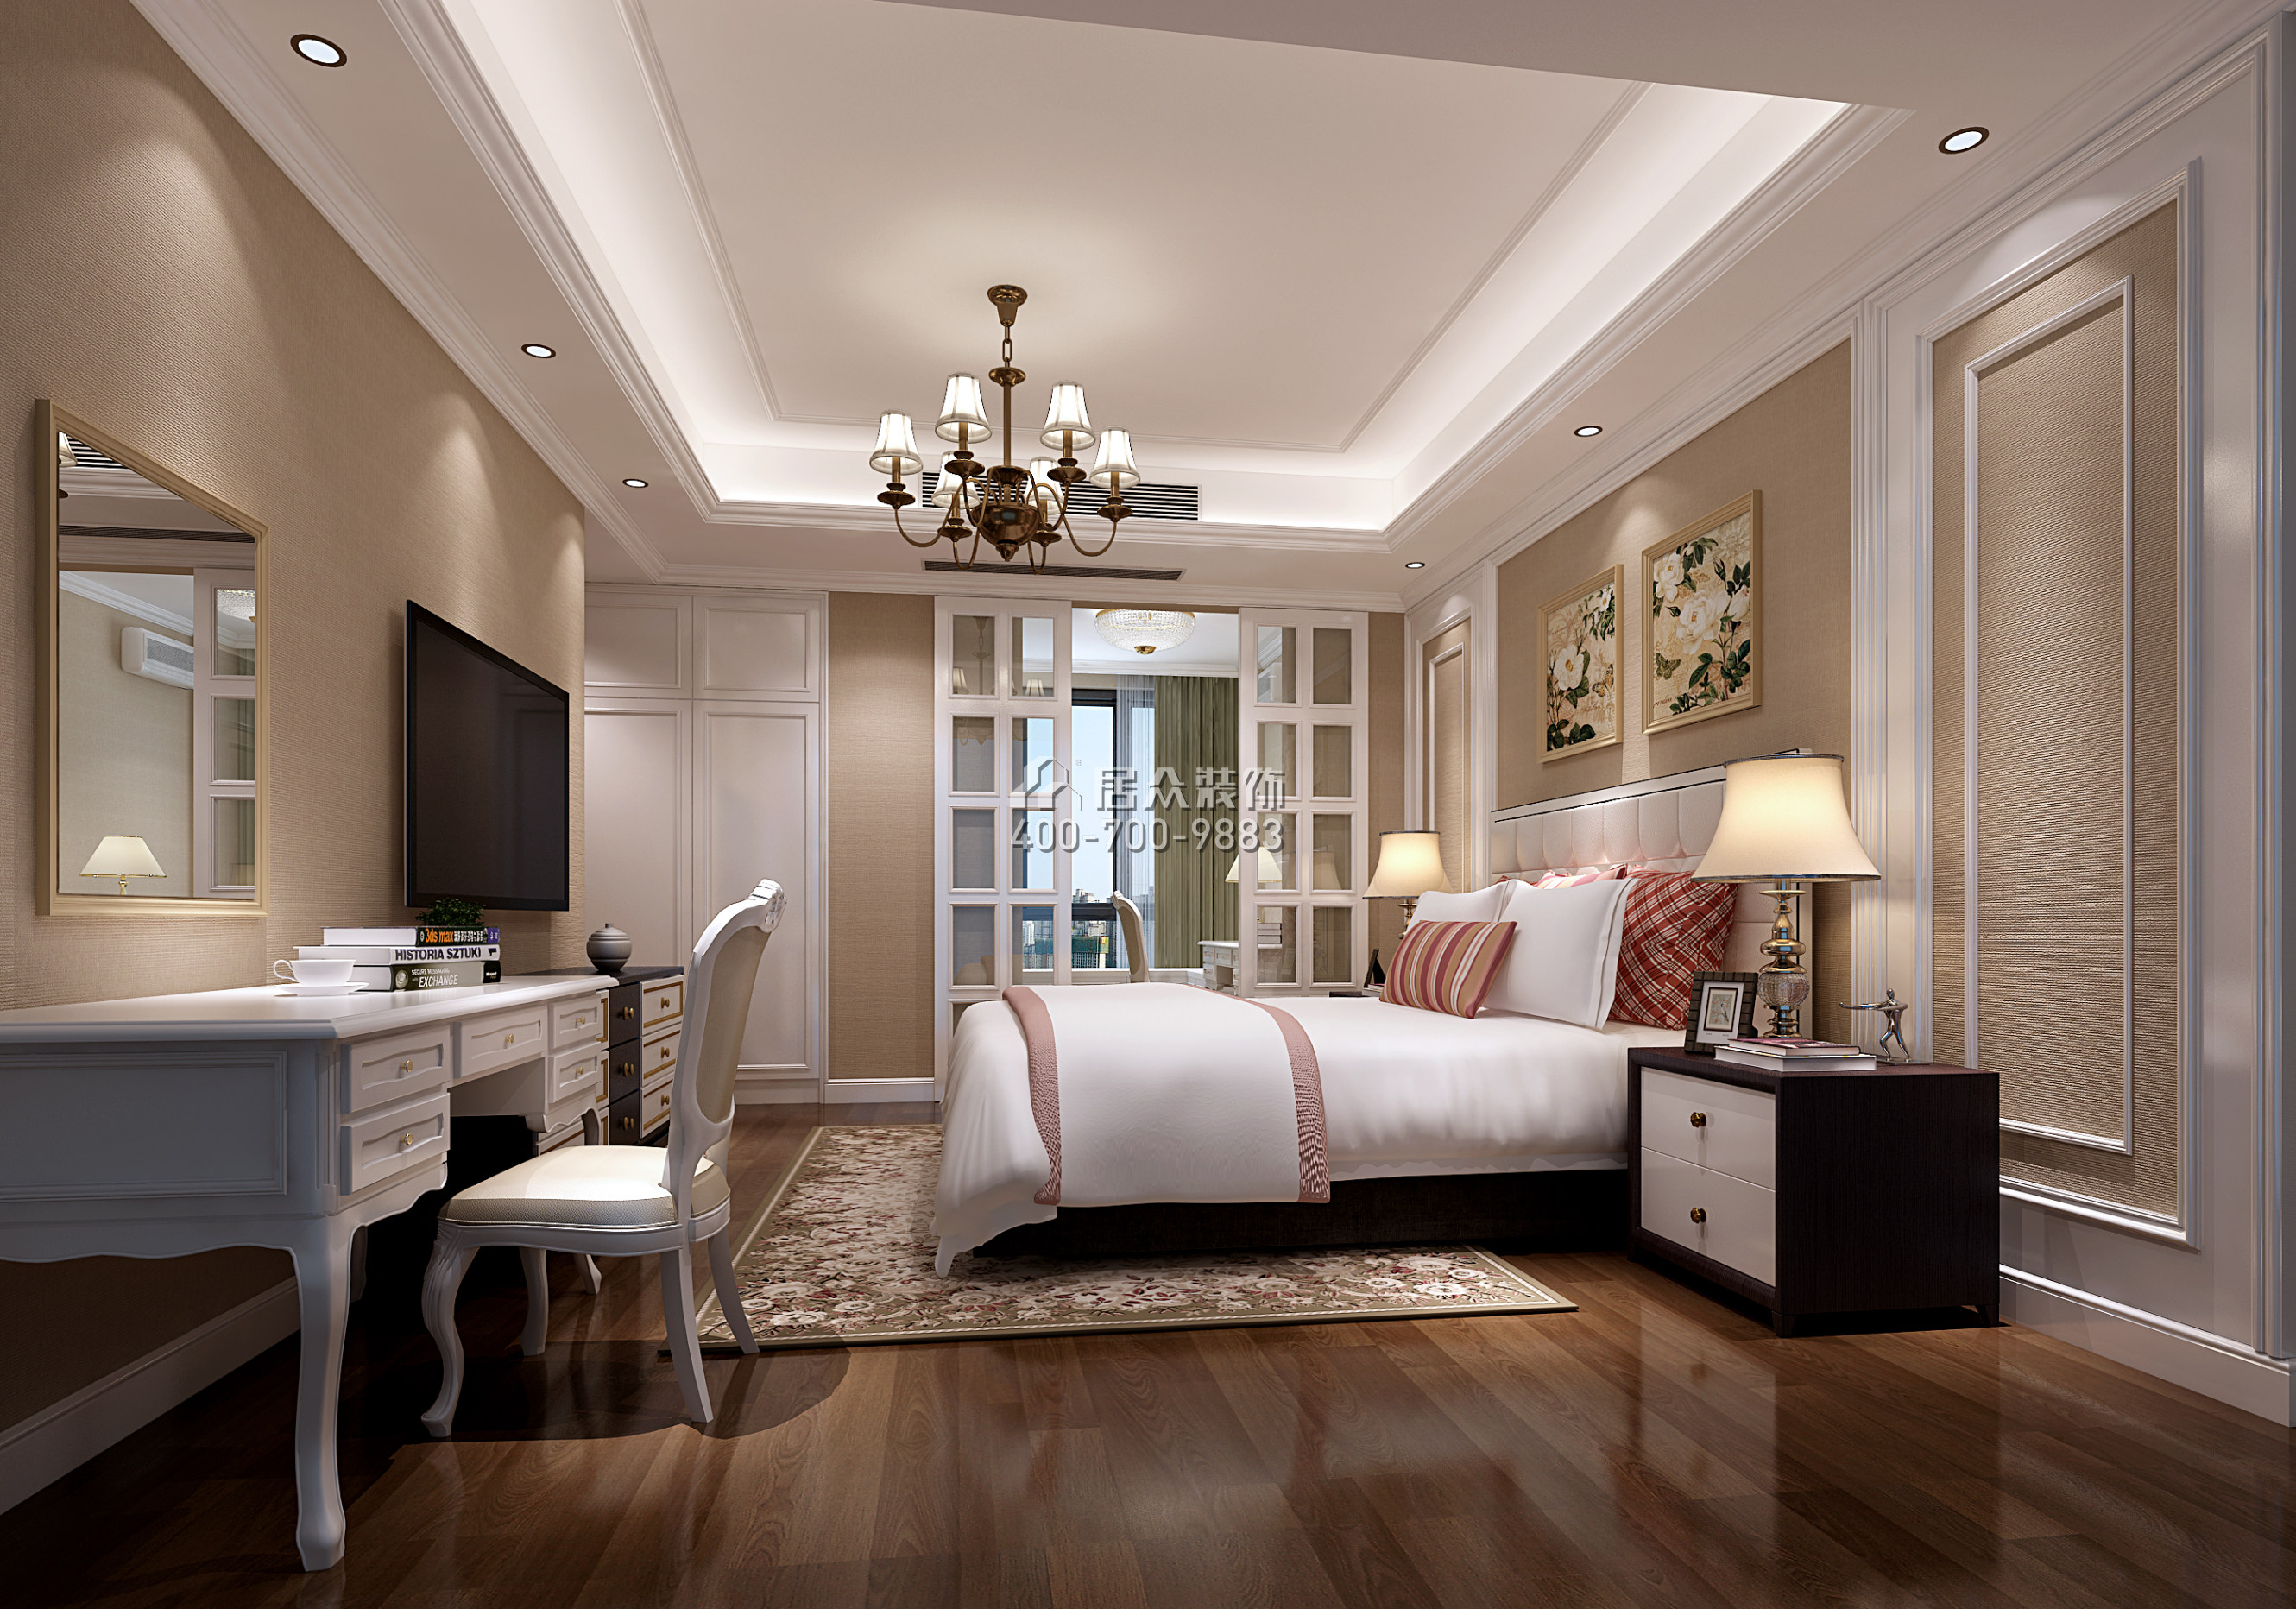 坪洲新村二期120平方米美式风格平层户型卧室装修效果图